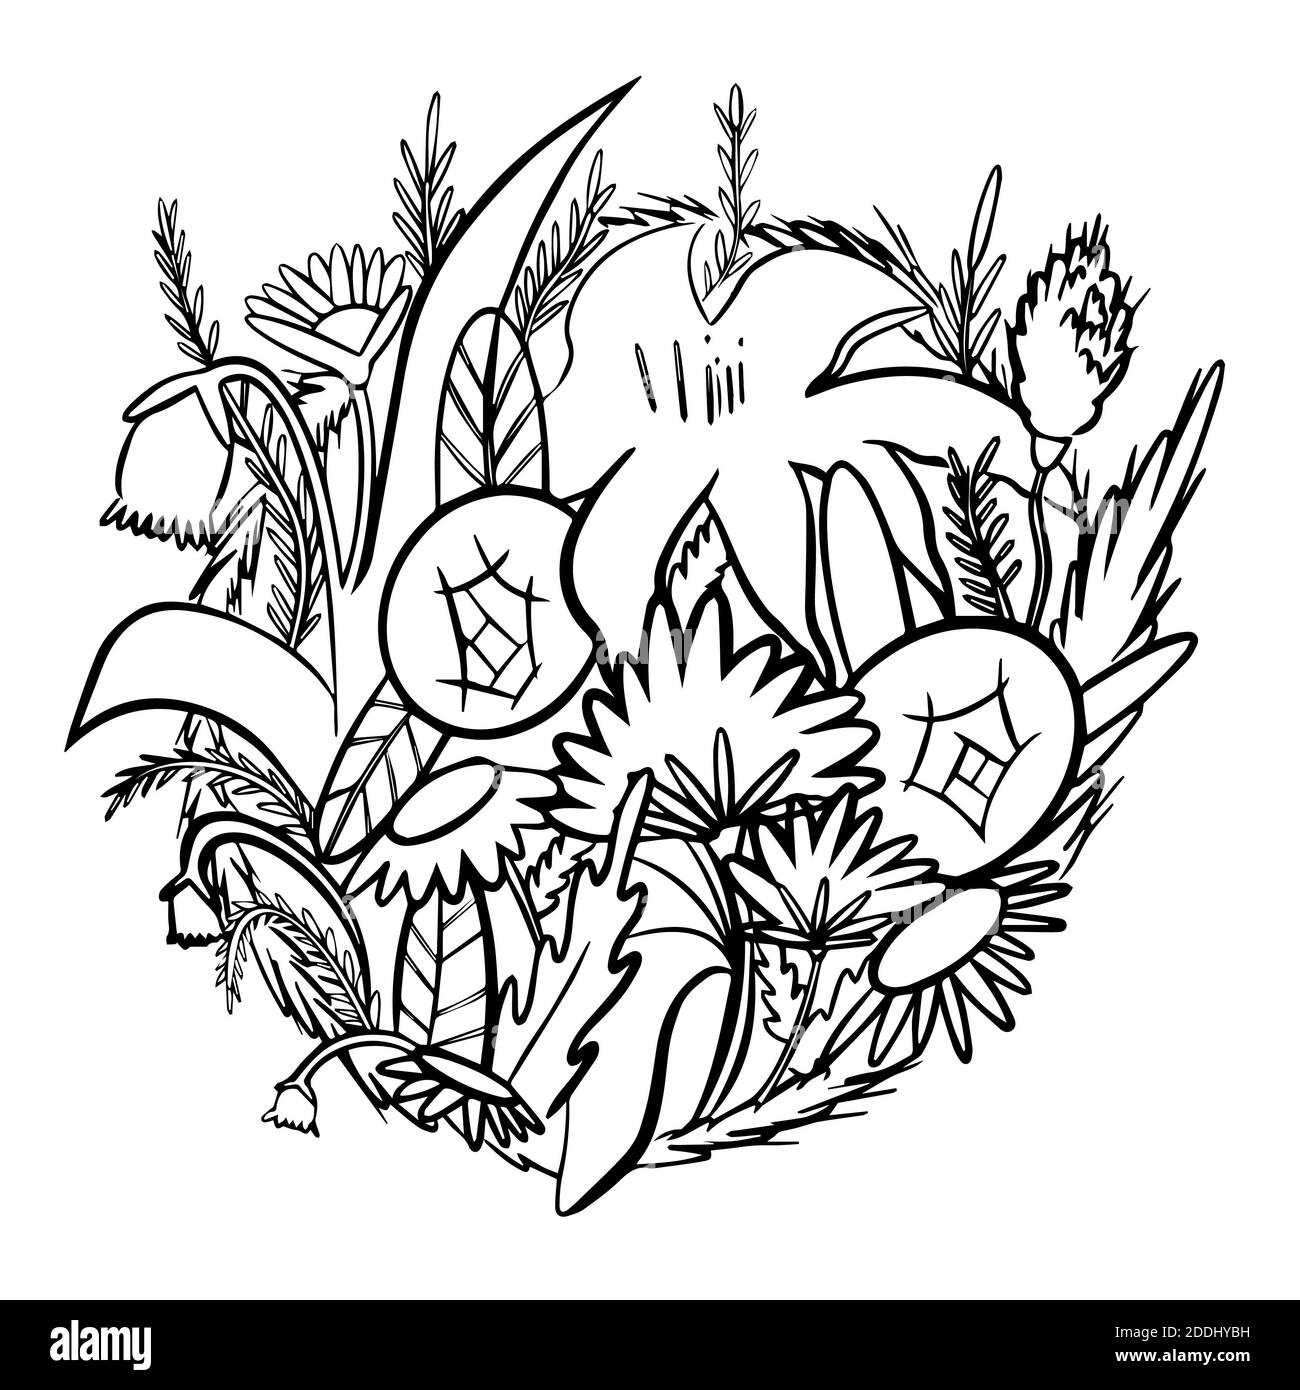 Illustration de la ligne de fleurs dans un vecteur isolé sur fond blanc Banque D'Images